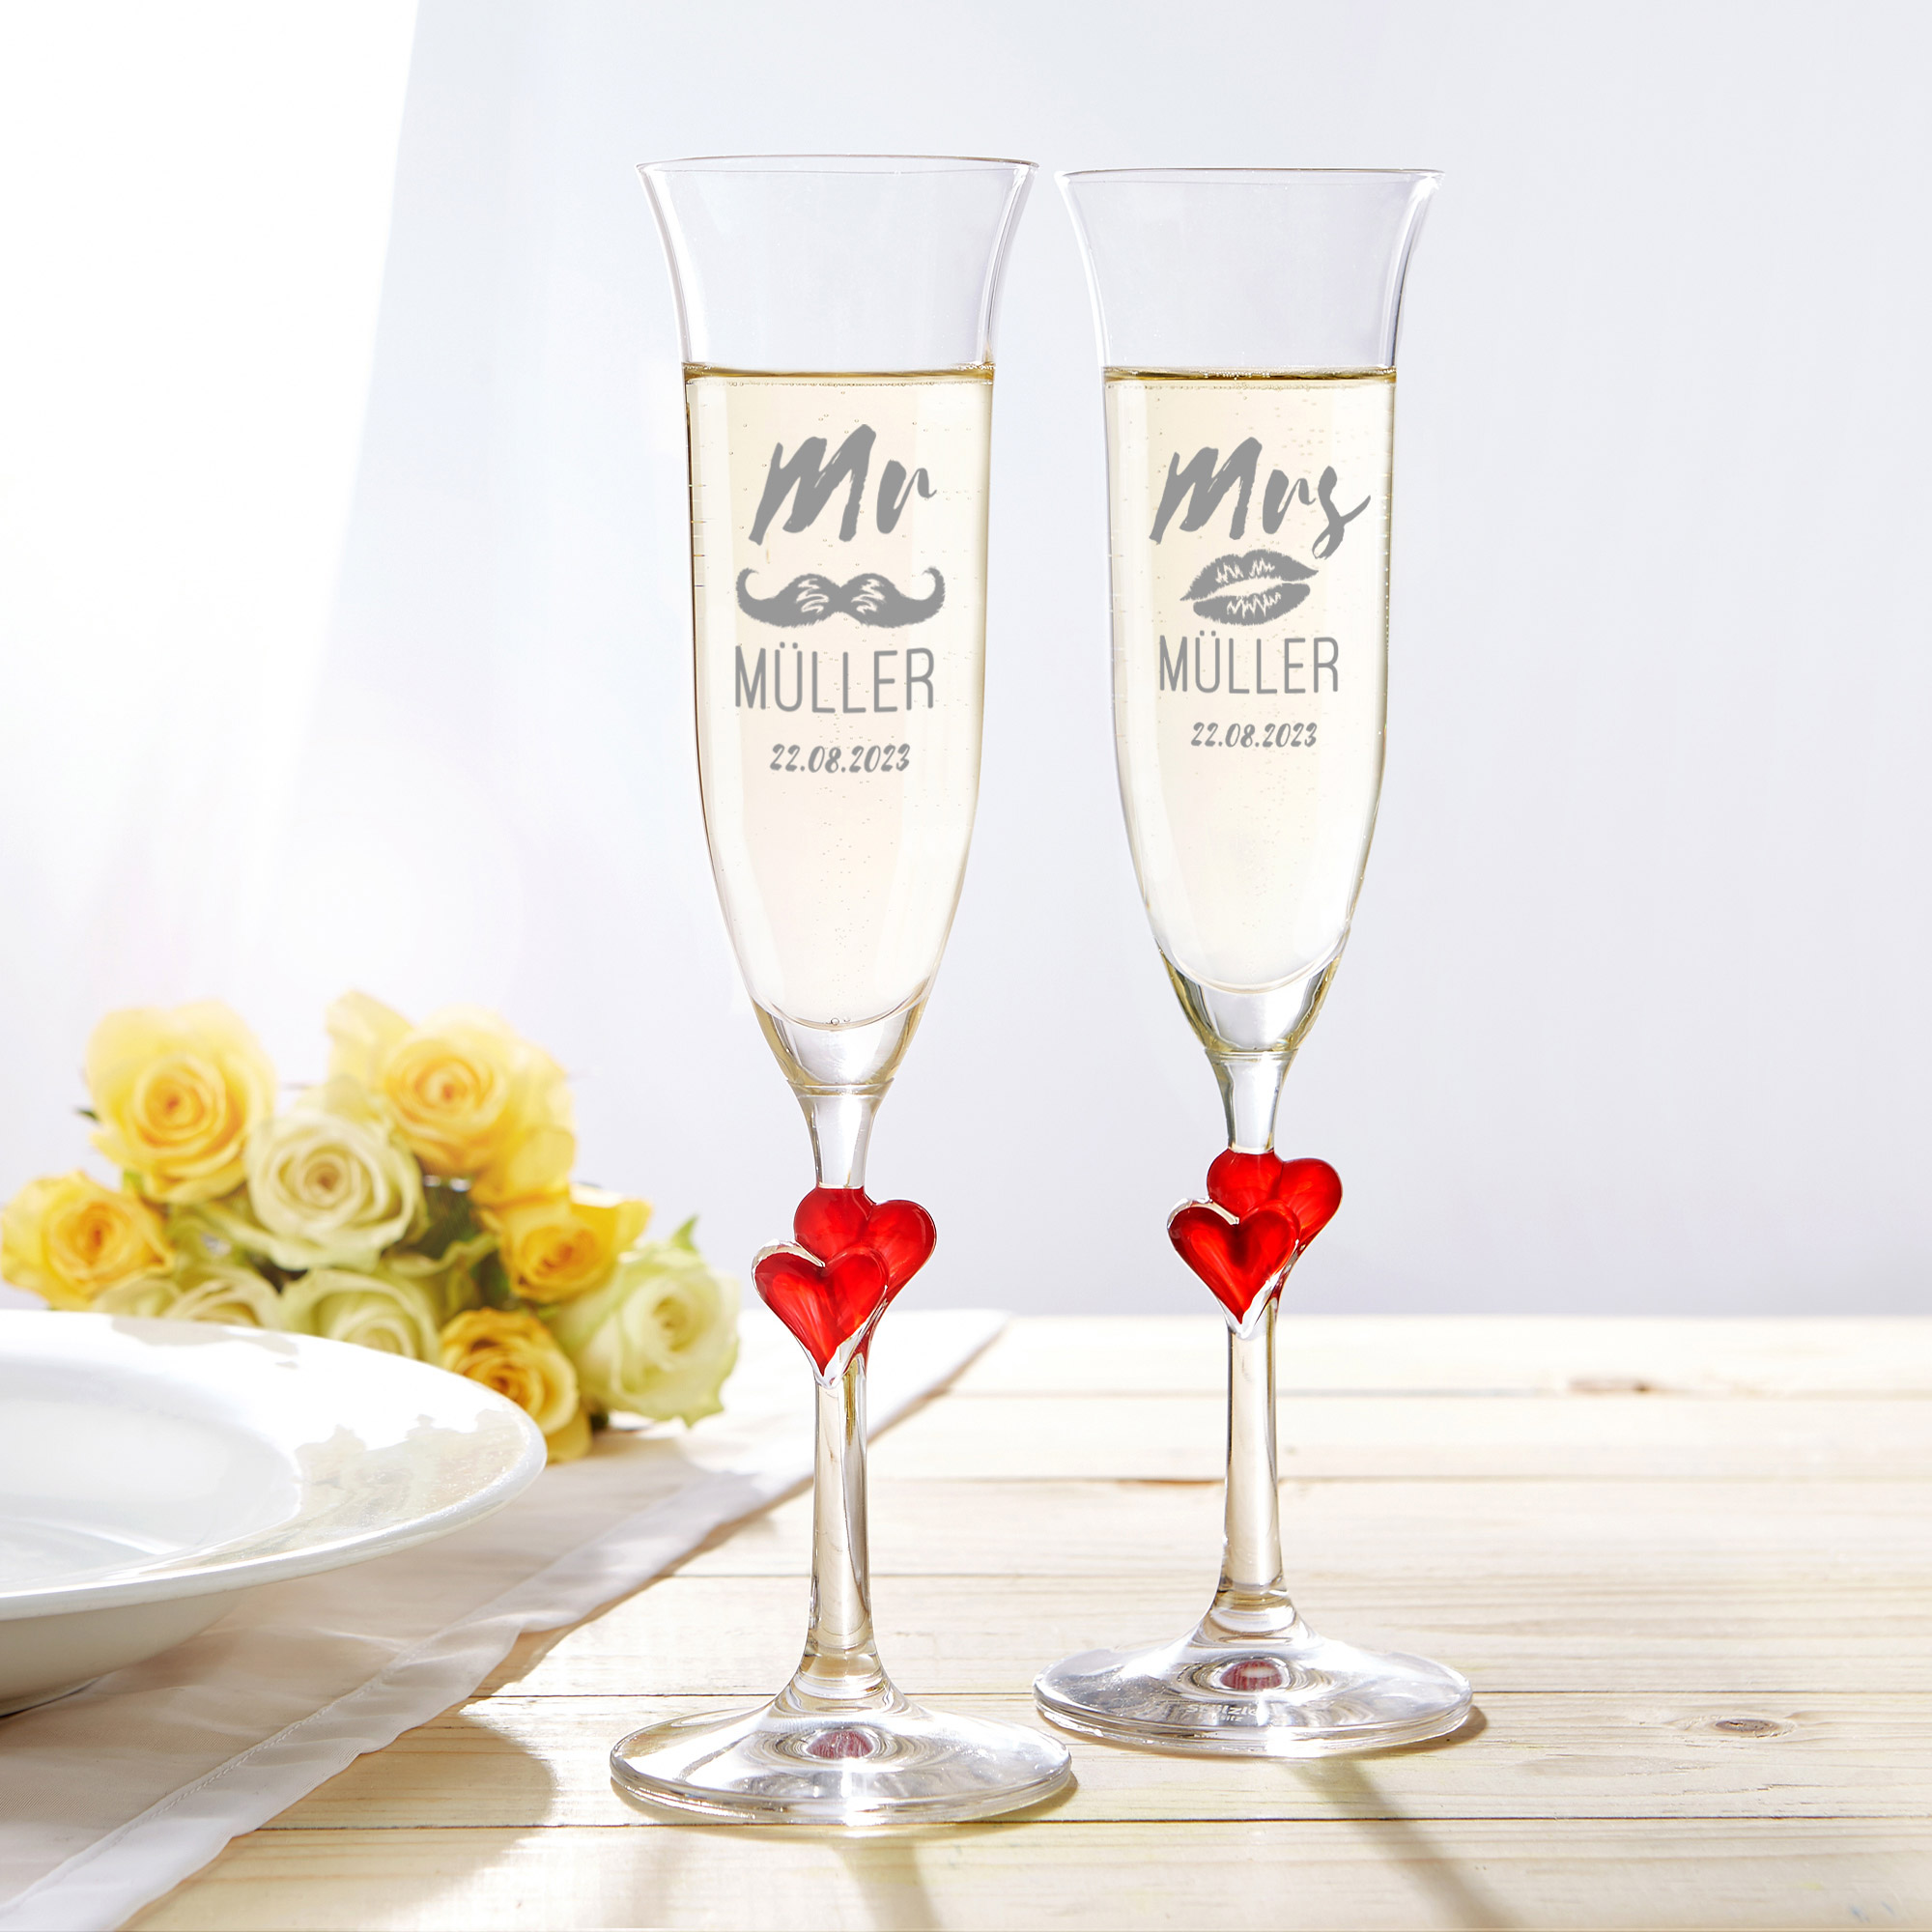 Sektglas mit Gravur Mr Mrs - Rotes Herz - 2er Set - Personalisiert